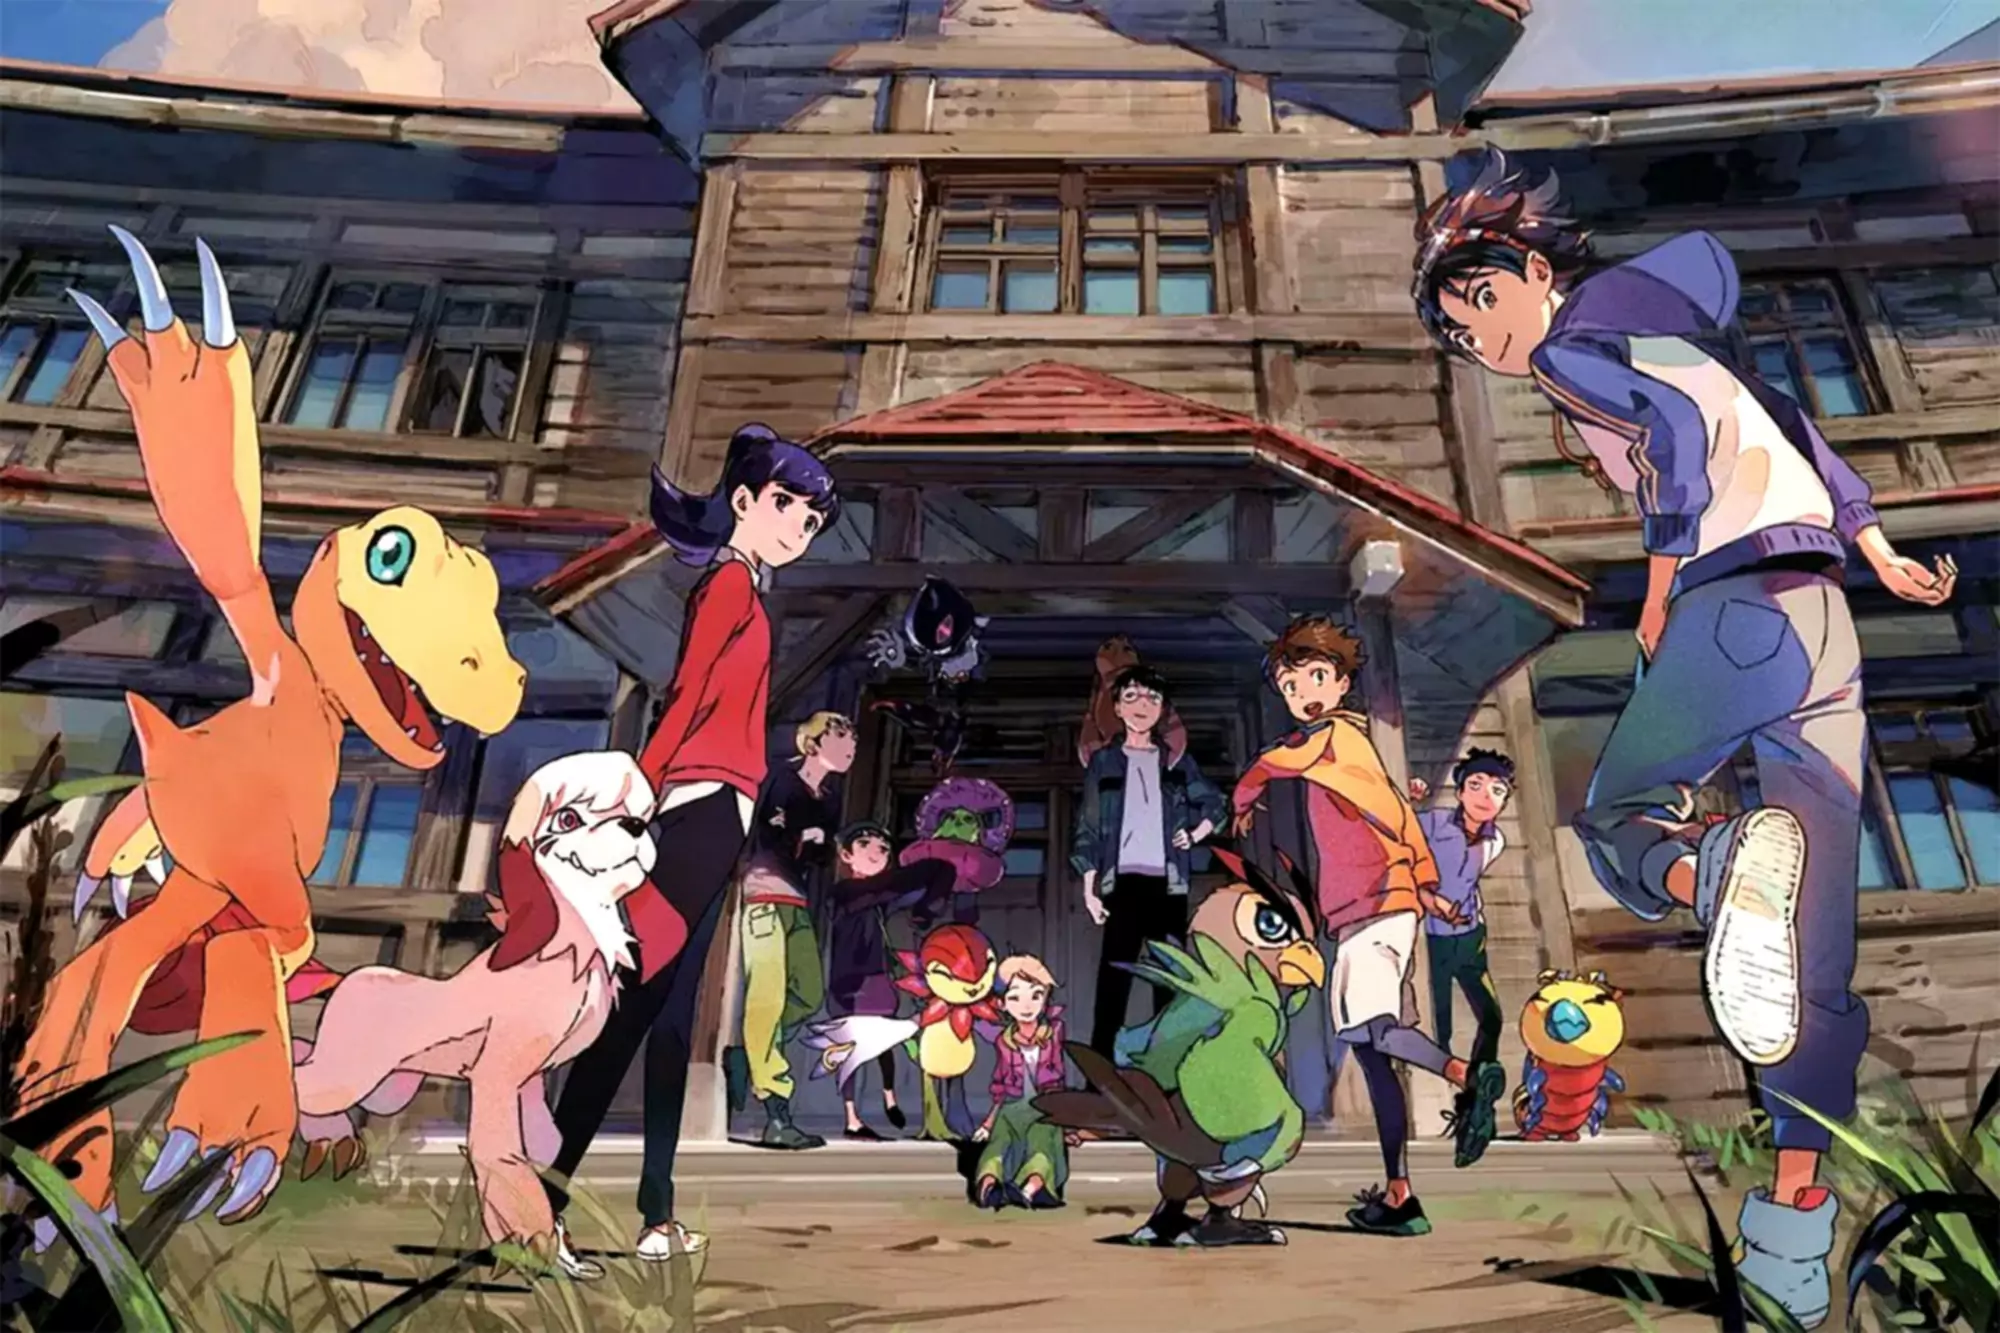 Ilustrație pentru Digimon Survive cu personaje și monștri Digimon care se uită înapoi la cameră în timp ce aleargă într-o casă mare.